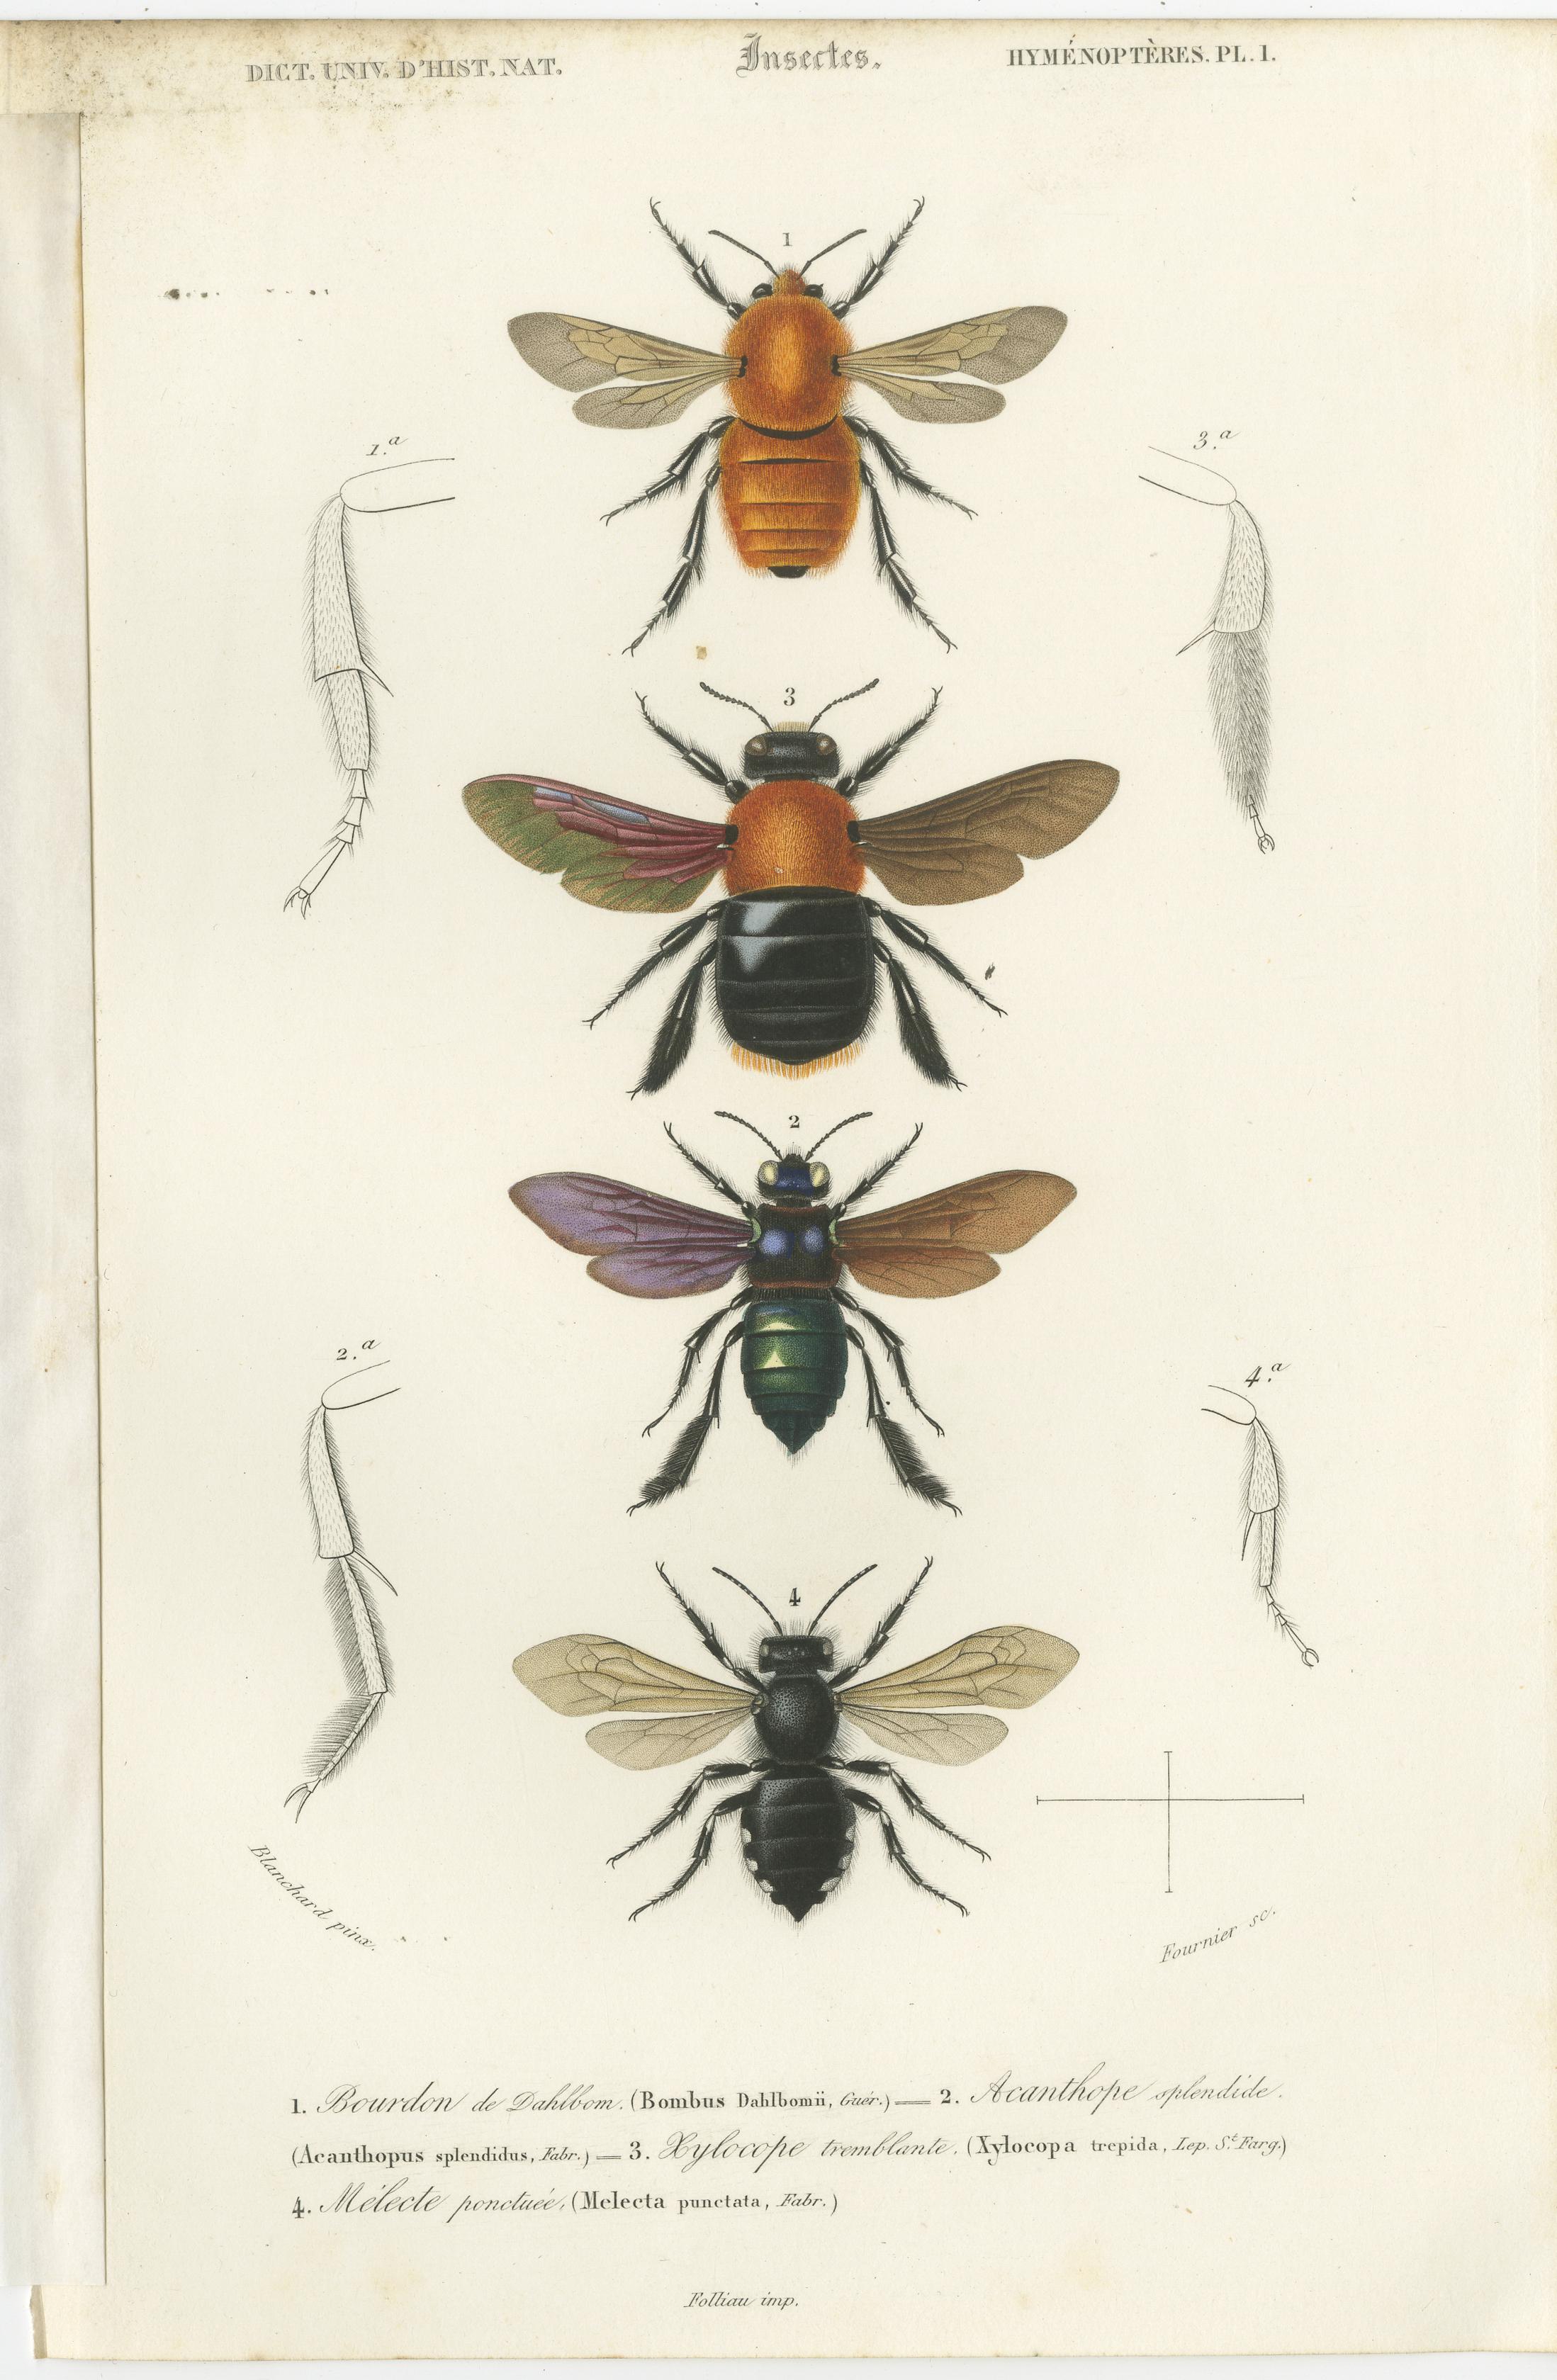 Ensemble de 5 gravures anciennes originales d'insectes diptères (mouches) et hyménoptères. Ces gravures proviennent du 